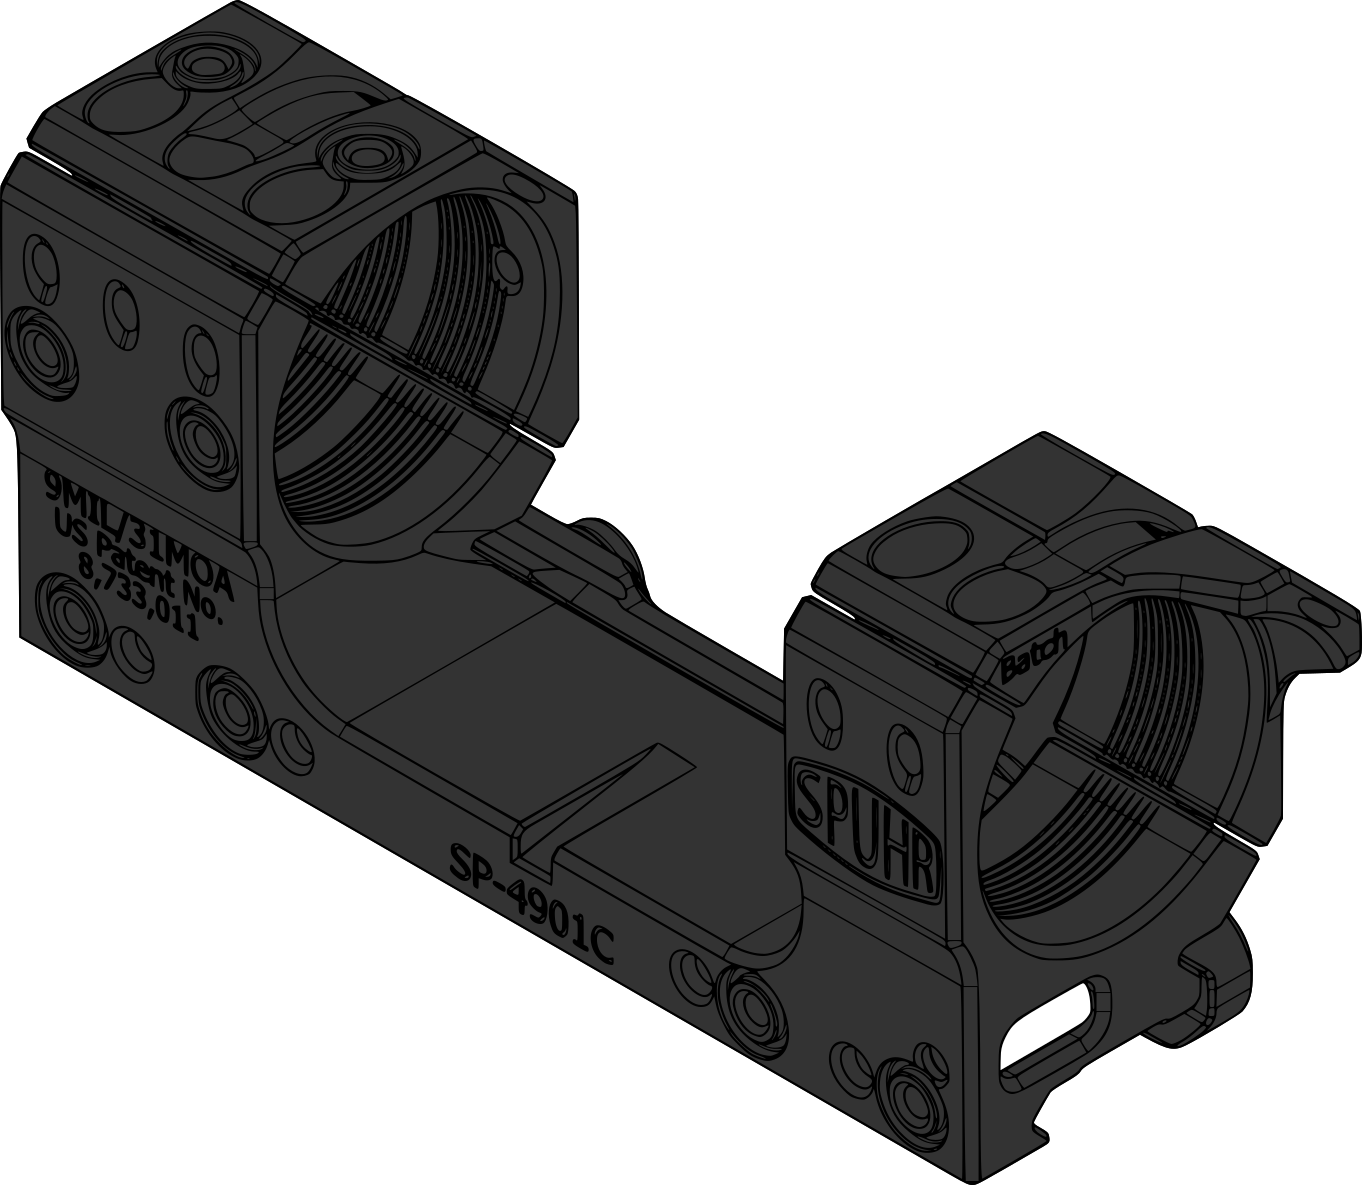 Spuhr montáž pro puškohled s tubusem 34 mm, výška 30 mm, sklon 9 MRAD, Gen3